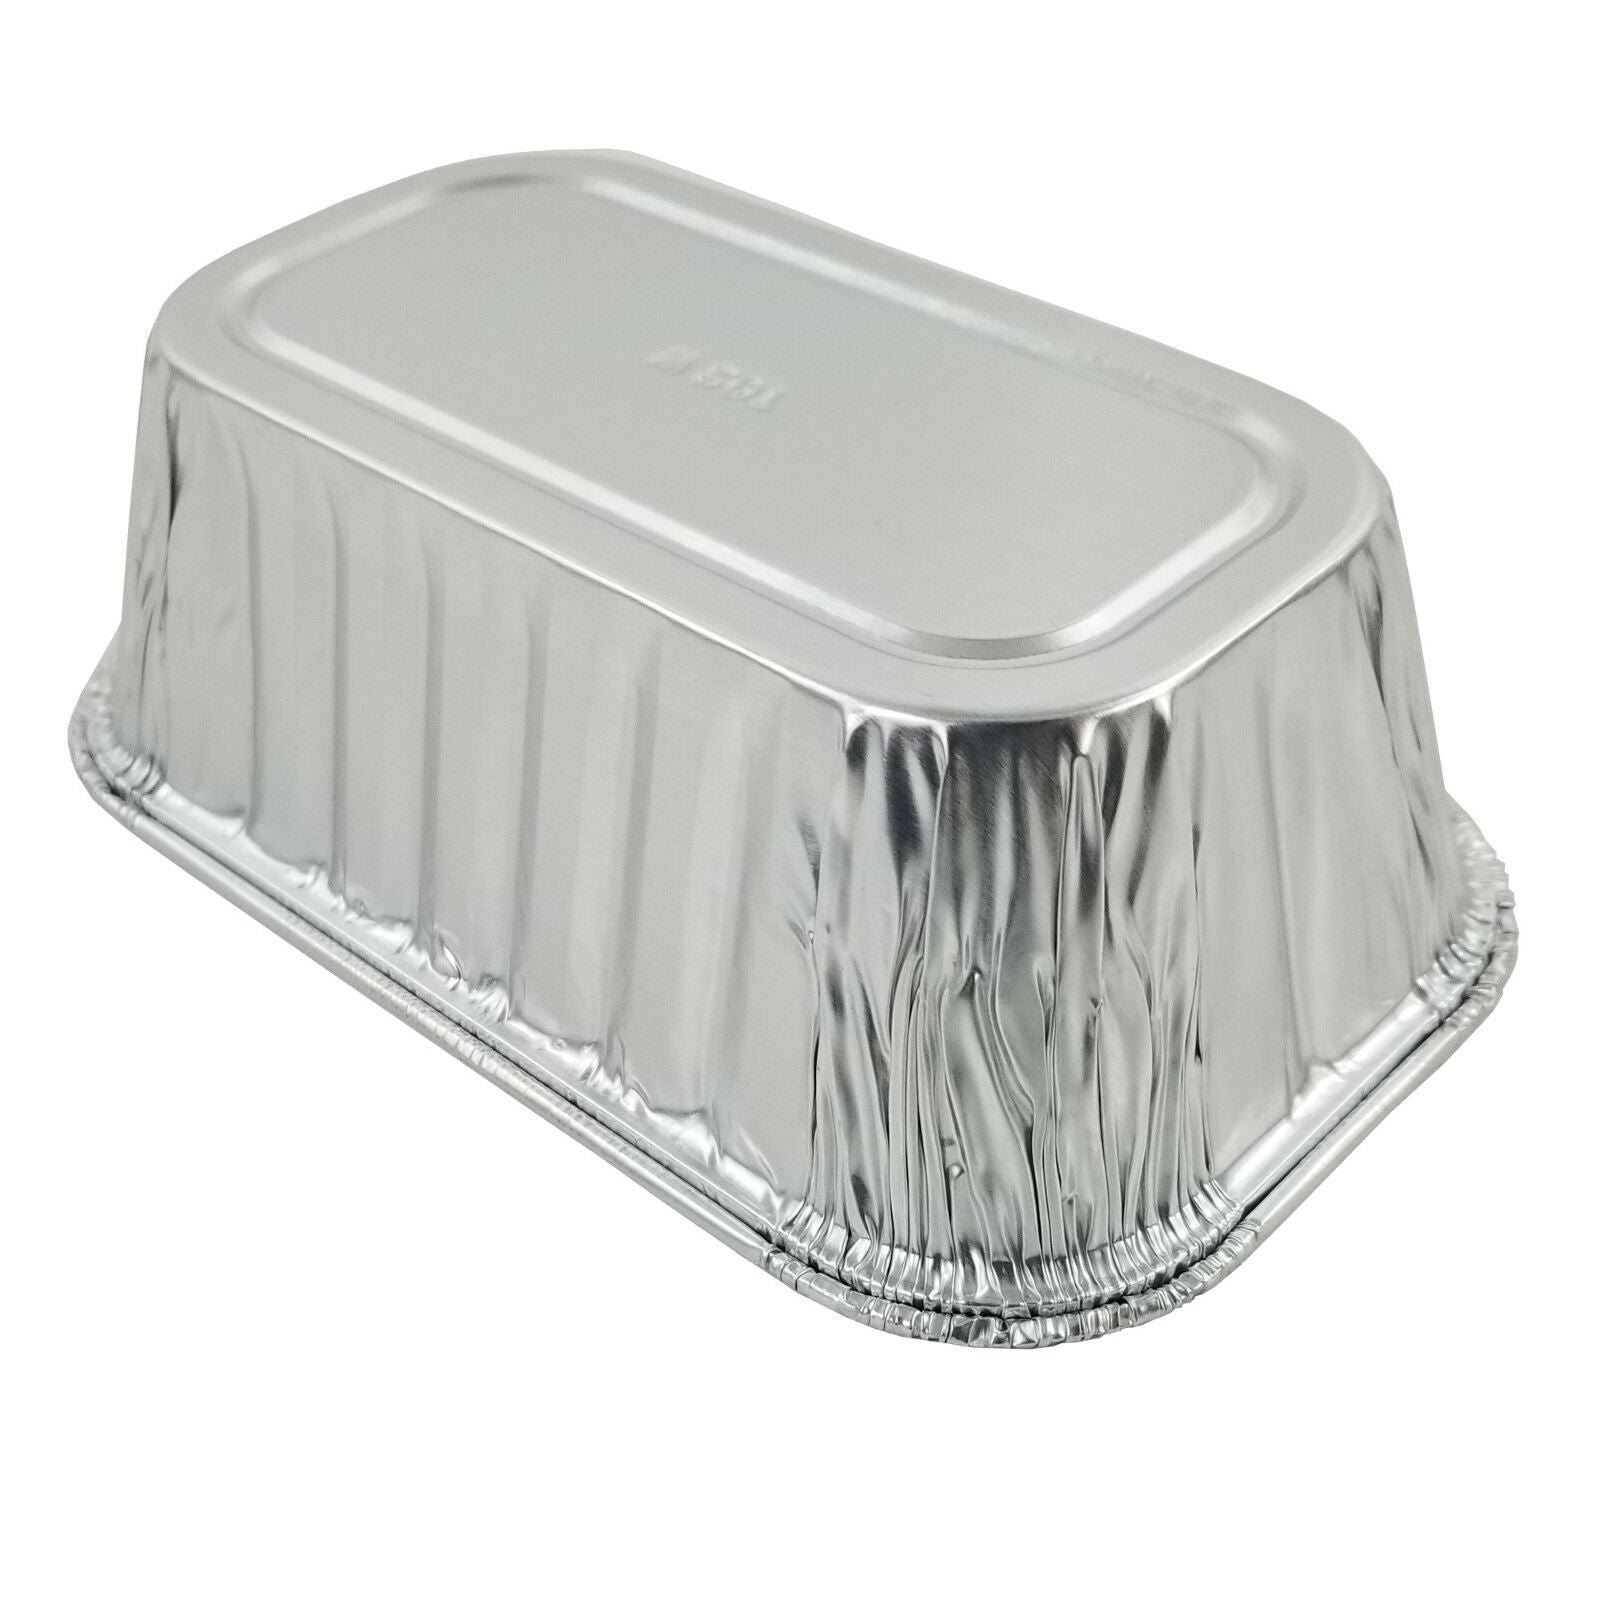  D&W Fine Pack A86 2 lb. Aluminum Foil Loaf/Bread Pan Tins  w/Foil Board Lid (Pack of 25 Sets) : Home & Kitchen